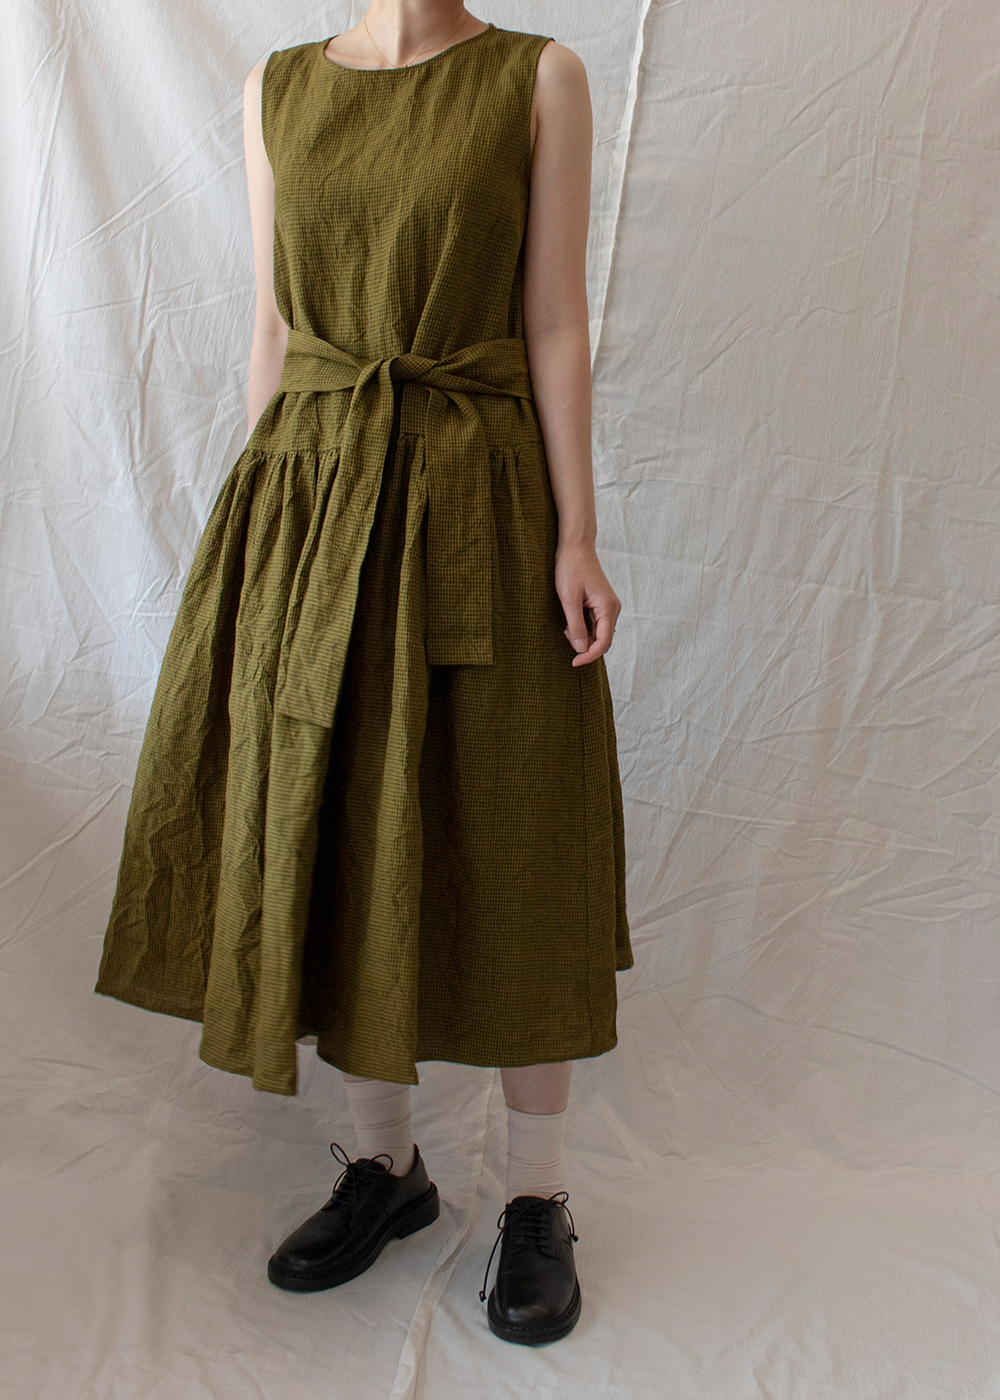 P1605 Gingham Linen Dress - Grass Green Military Green